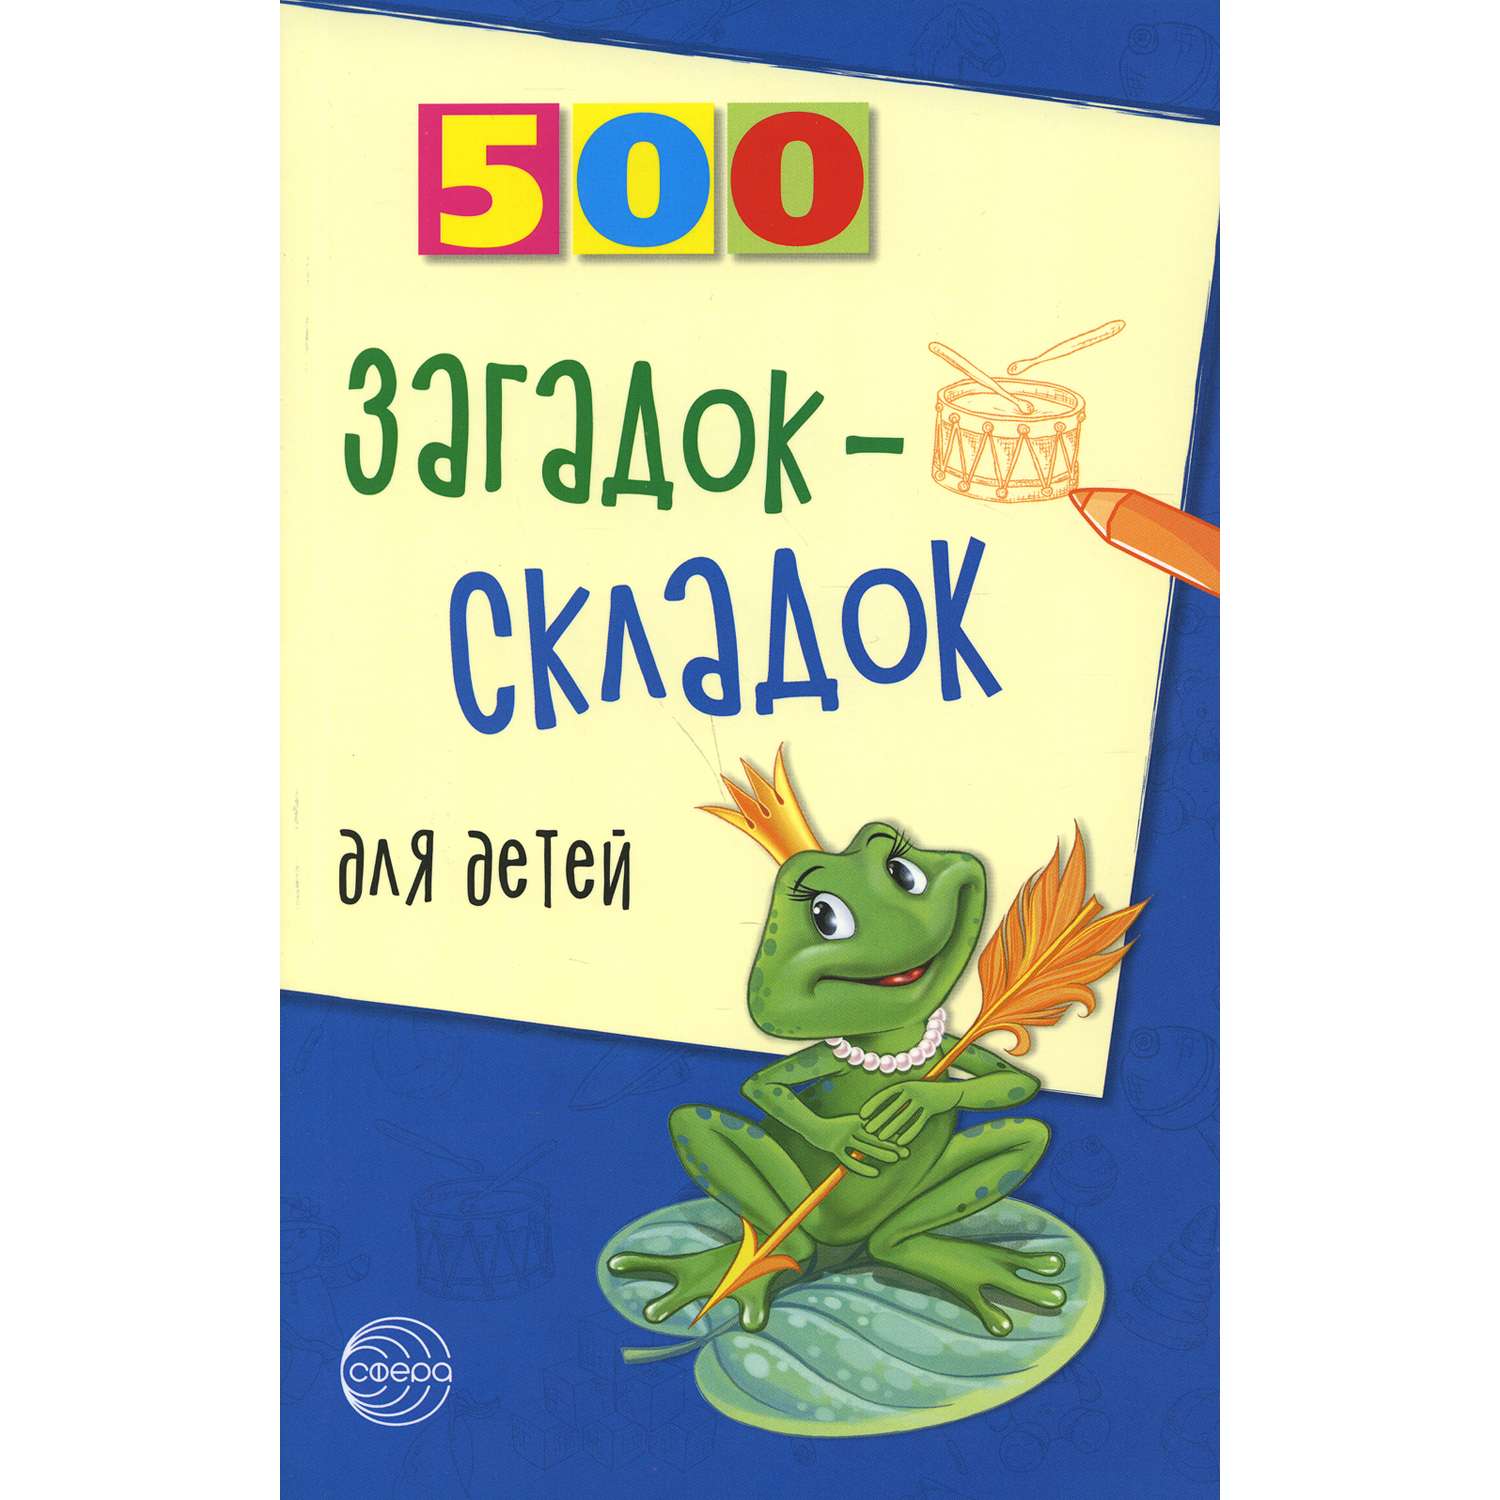 Книга ТЦ Сфера 500 загадок-складок для детей. 3-е издание - фото 1